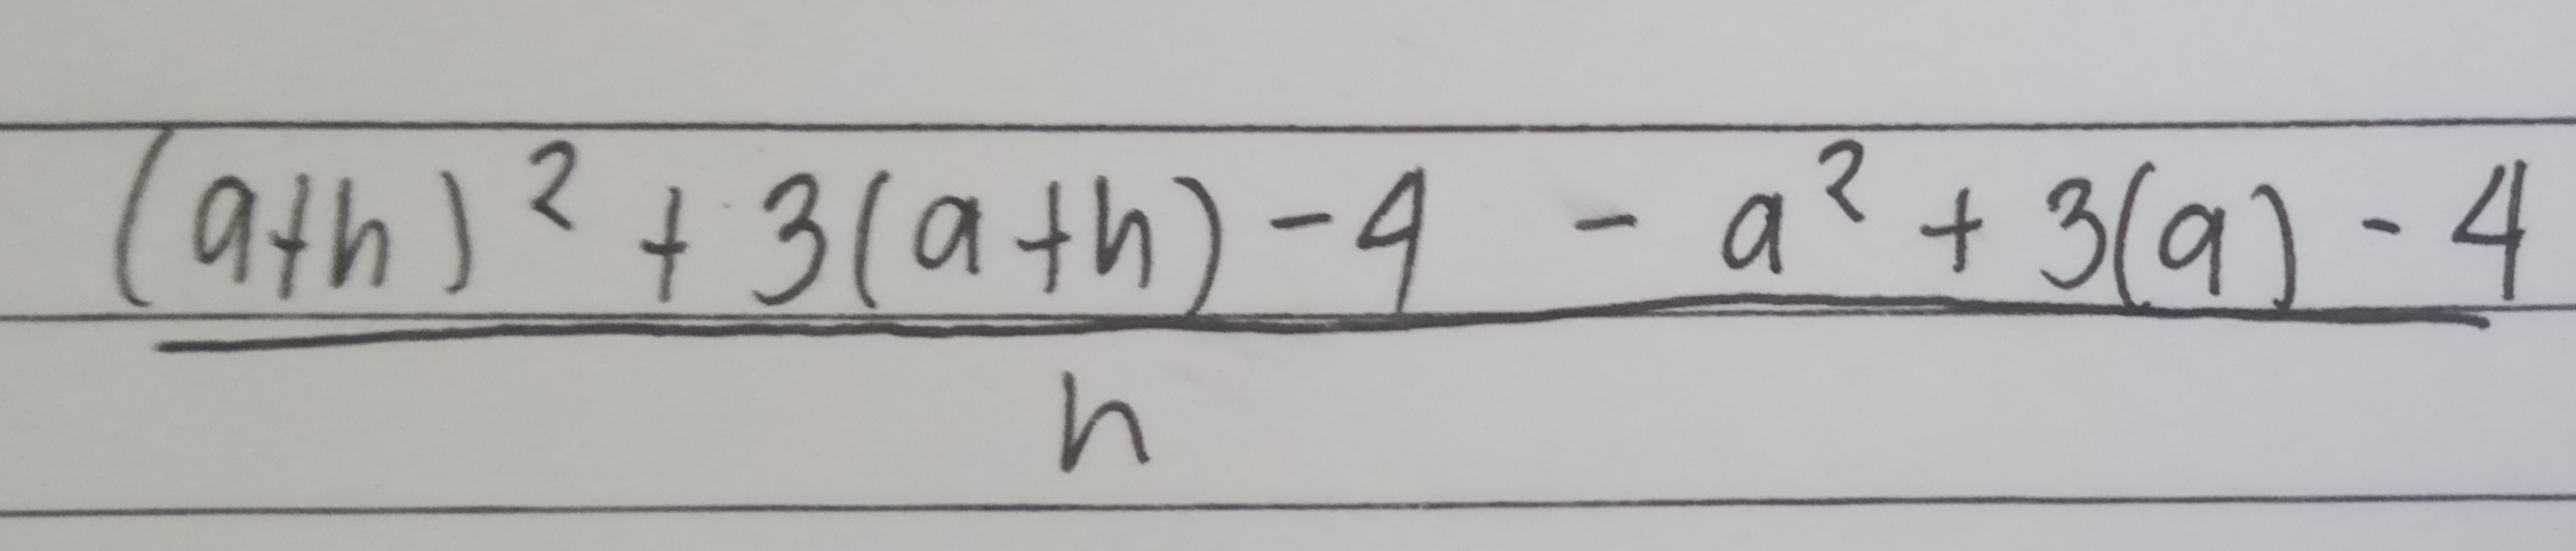 9th )?+ 3(ath)-4 - a²+3(9) - 4
